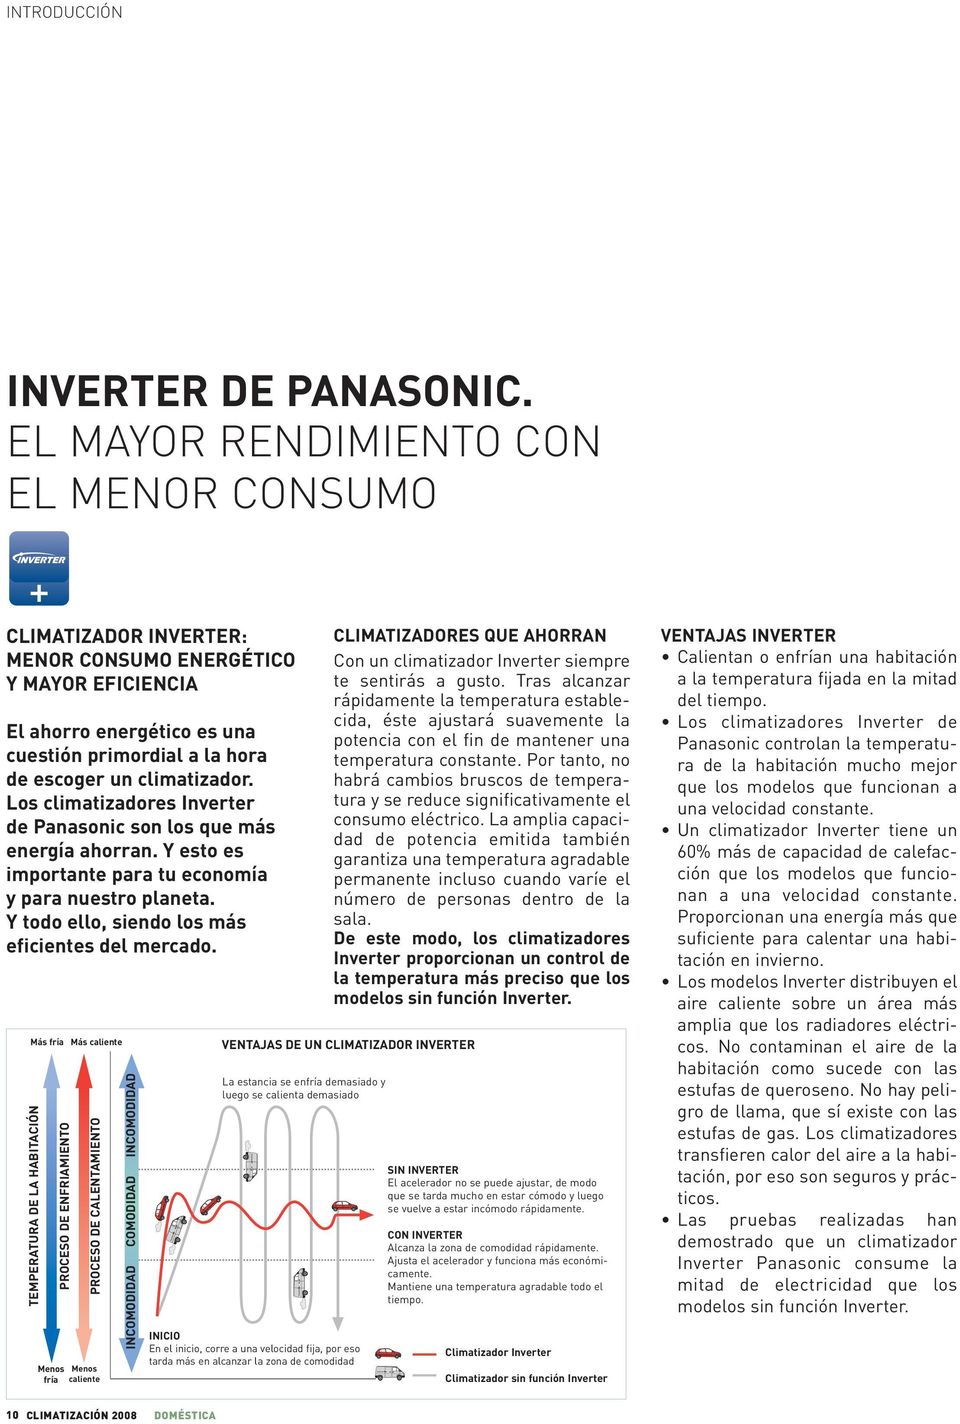 Los climatizadores Inverter de Panasonic son los que más energía ahorran. Y esto es importante para tu economía y para nuestro planeta. Y todo ello, siendo los más eficientes del mercado.